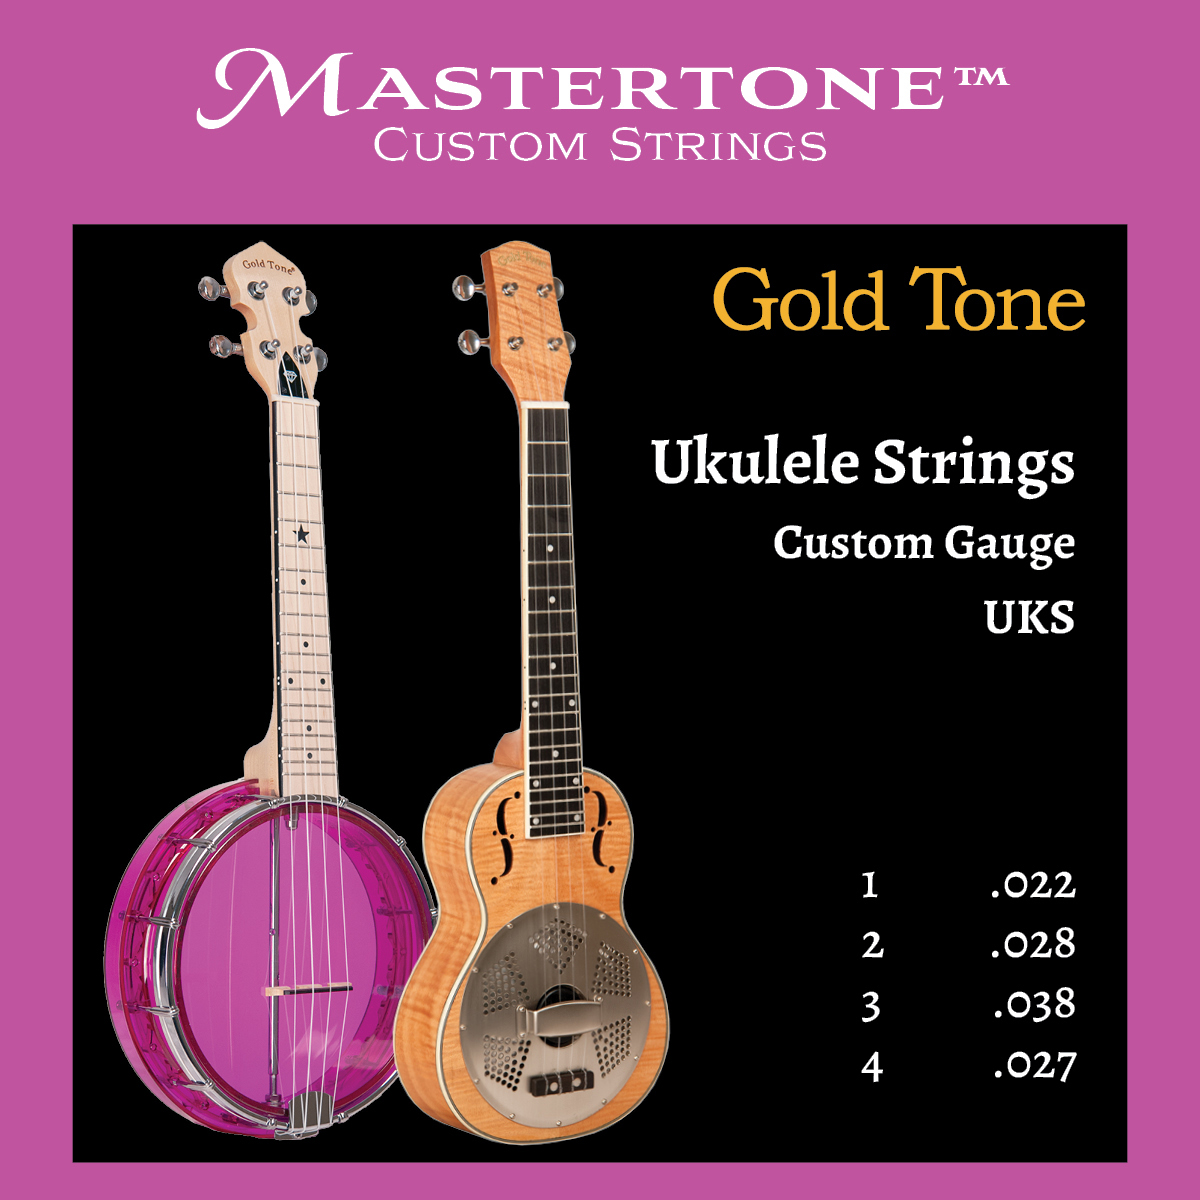 Uks Ukulele Strings (Pack of 3)